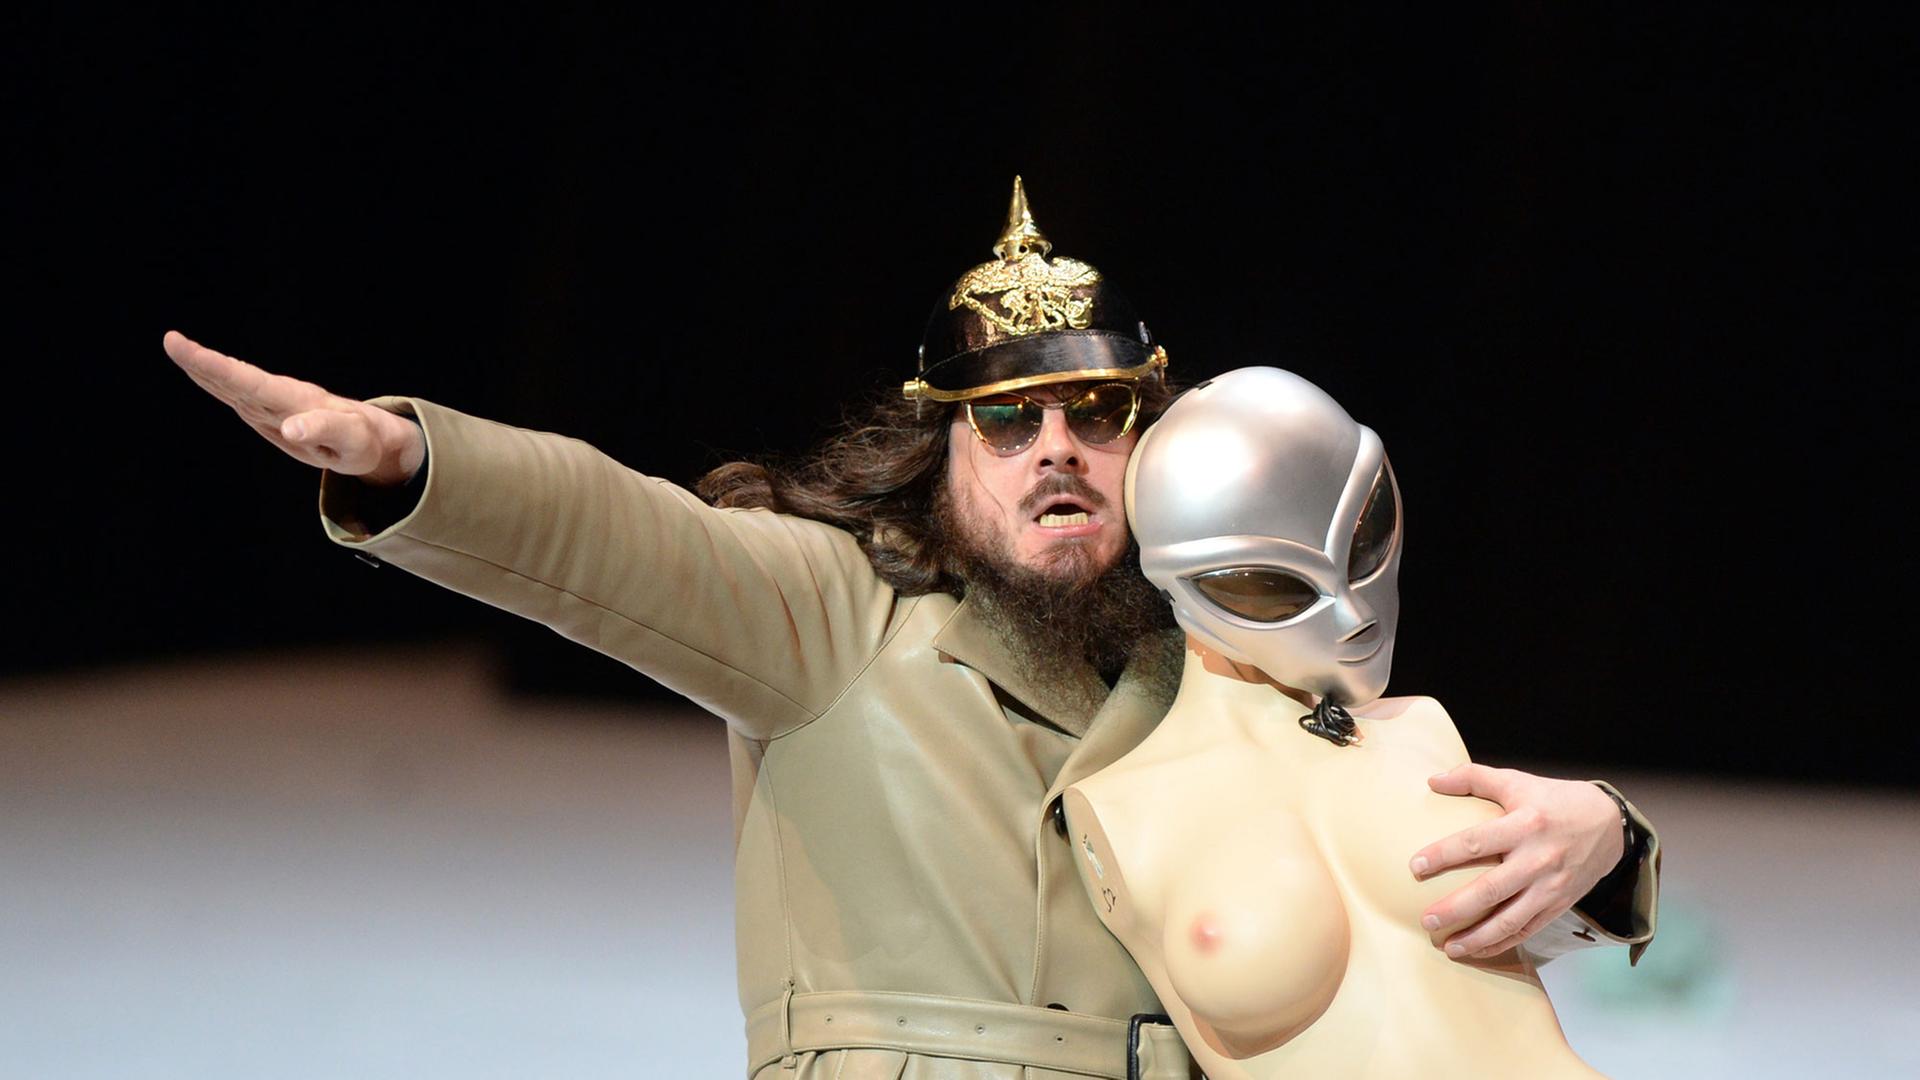 Der Künstler Jonathan Meese führt am 26.06.2013 im Nationaltheater Mannheim (Baden-Württemberg) das Stück "Generaltanz den Erzschiller" auf. Die Performance ist Teil der 17. Internationalen Schillertage.